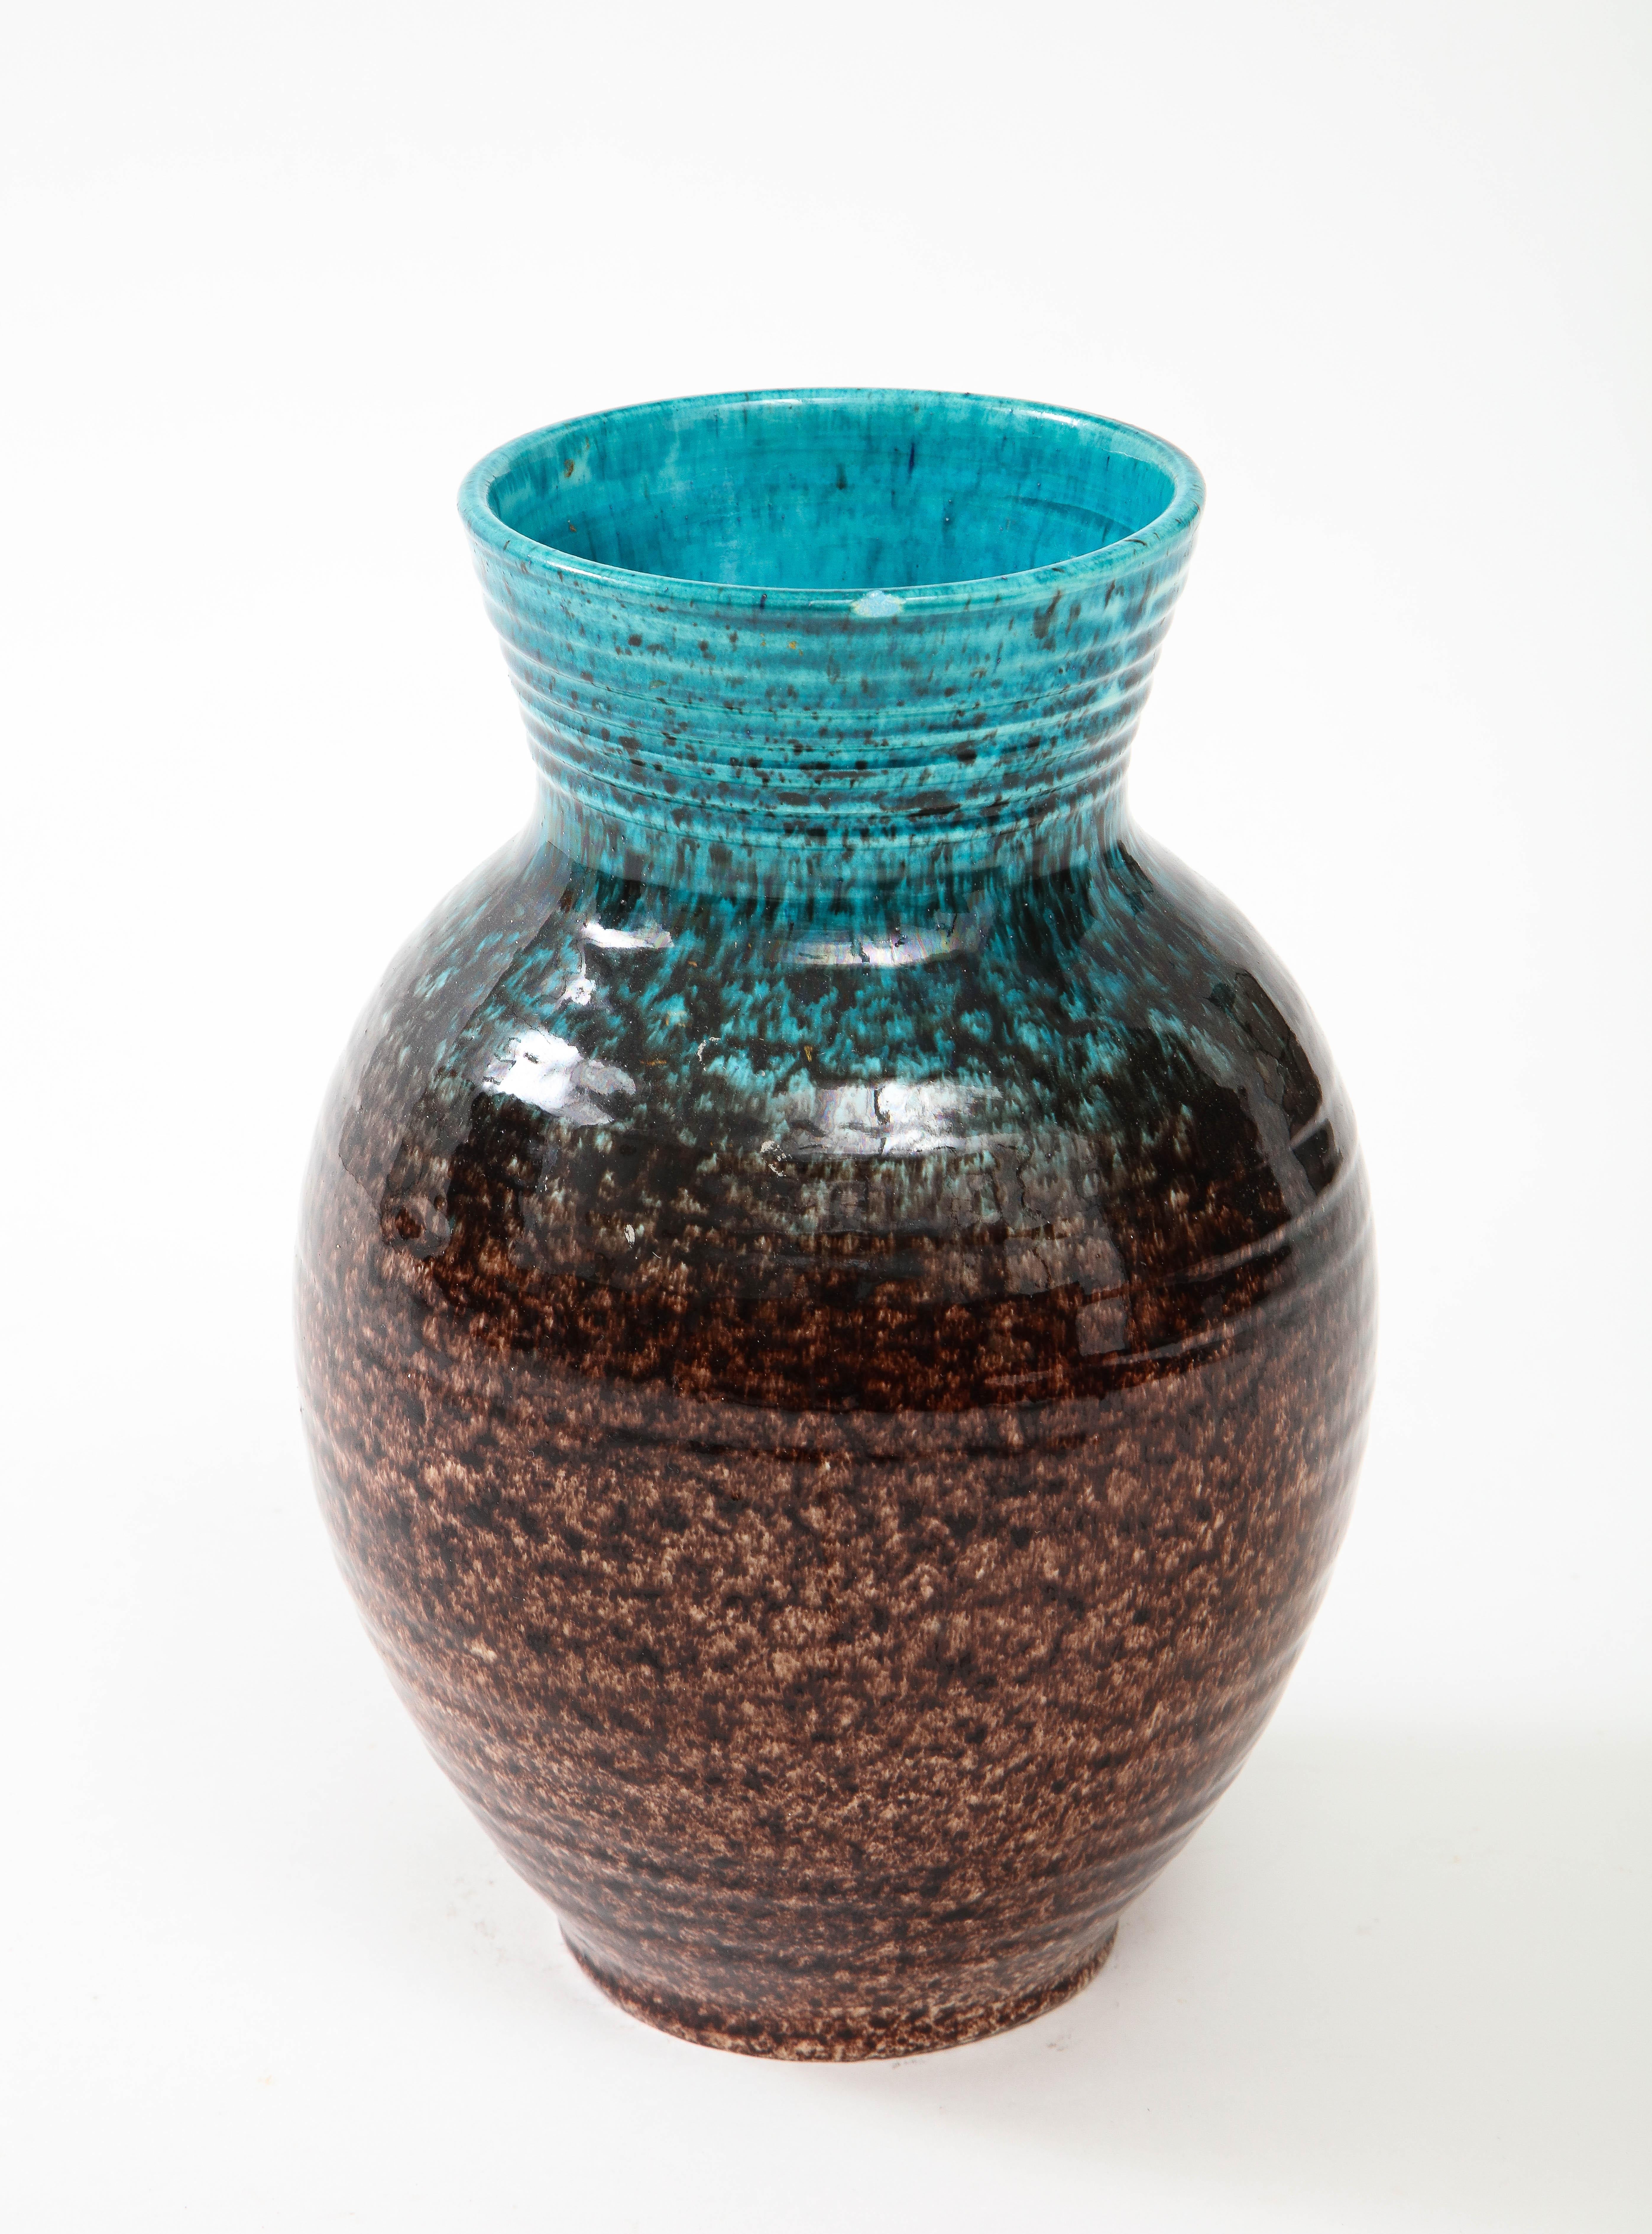 Vase en poterie française du milieu du siècle, fabriqué à la main, présentant un superbe effet d'ombre de glaçure turquoise et brune. Signé en bas.